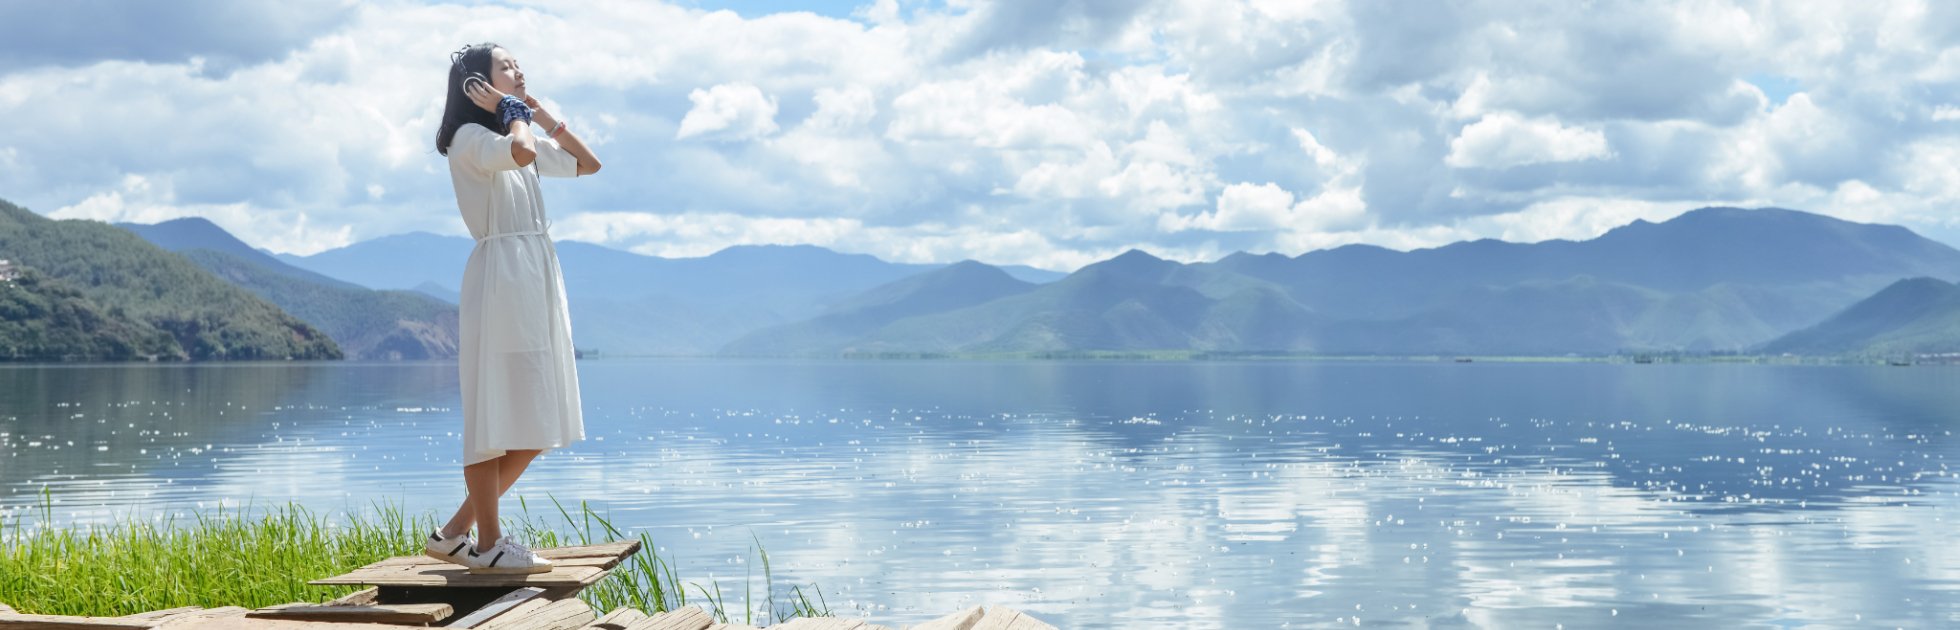 Mini-guide : l’essentiel pour découvrir le lac d’Annecy